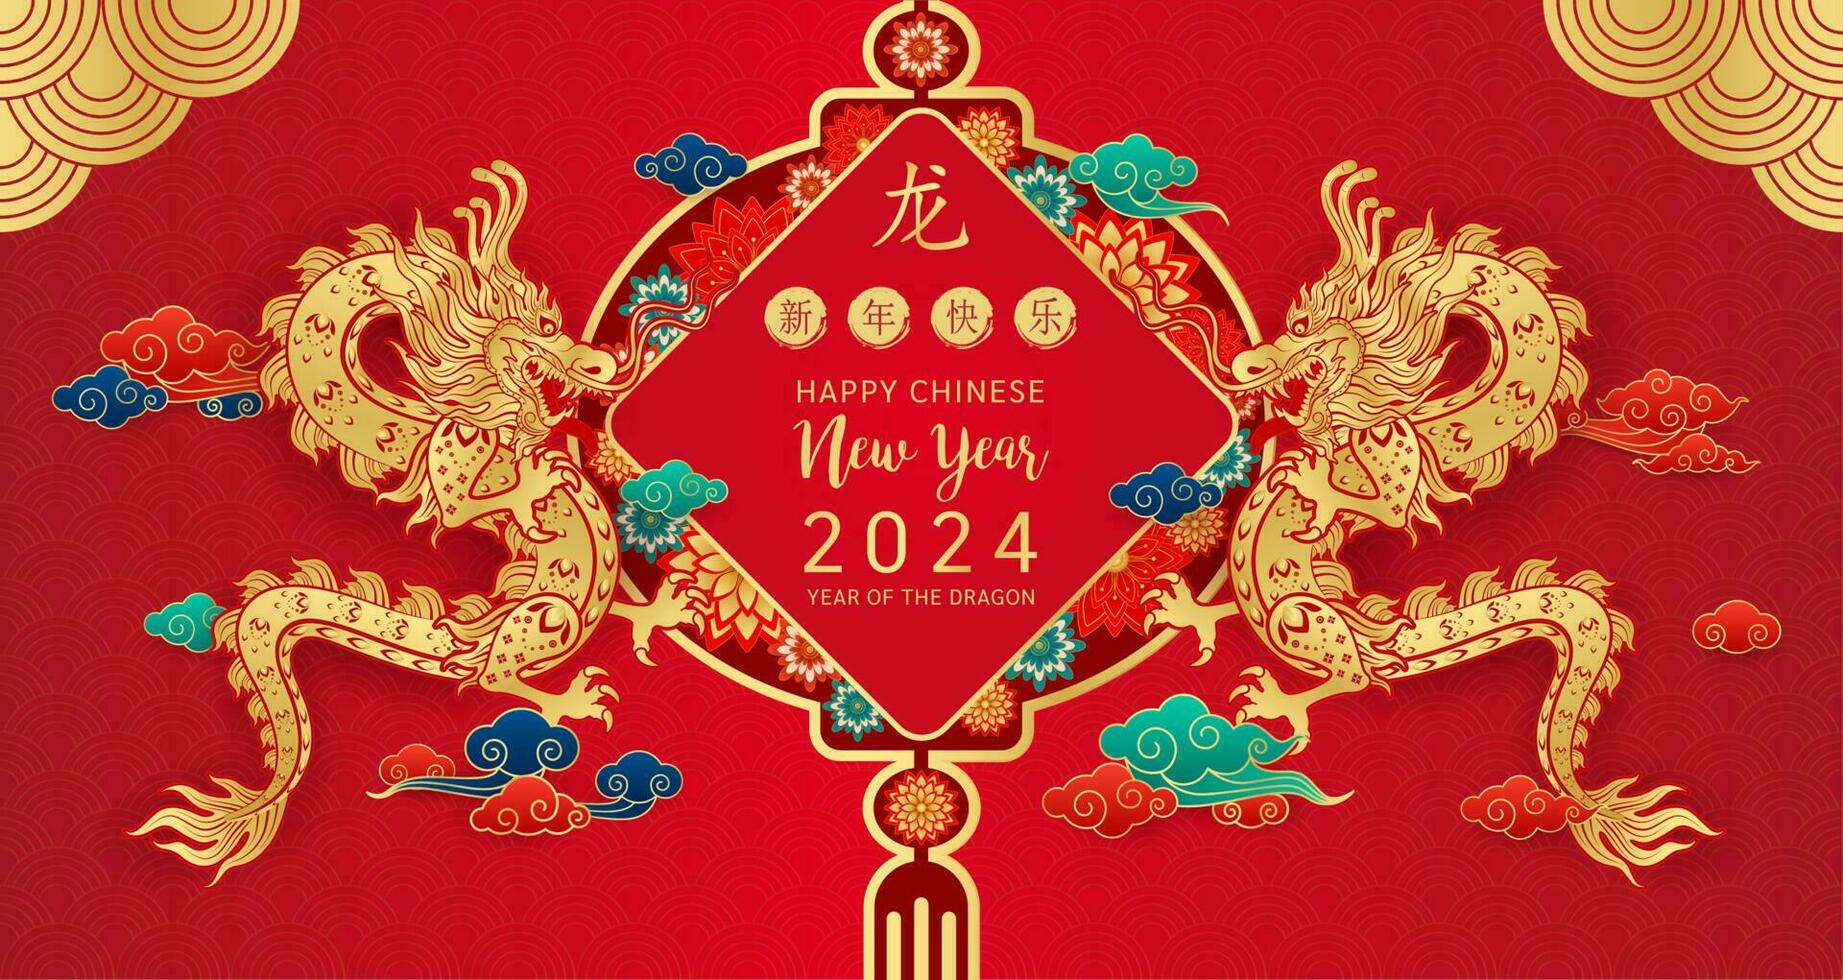 Lycklig kinesisk ny år 2024. kinesisk drake guld zodiaken tecken på röd bakgrund för kort design. Kina lunar kalender djur. översättning Lycklig ny år 2024, år av de drake. vektor eps10.